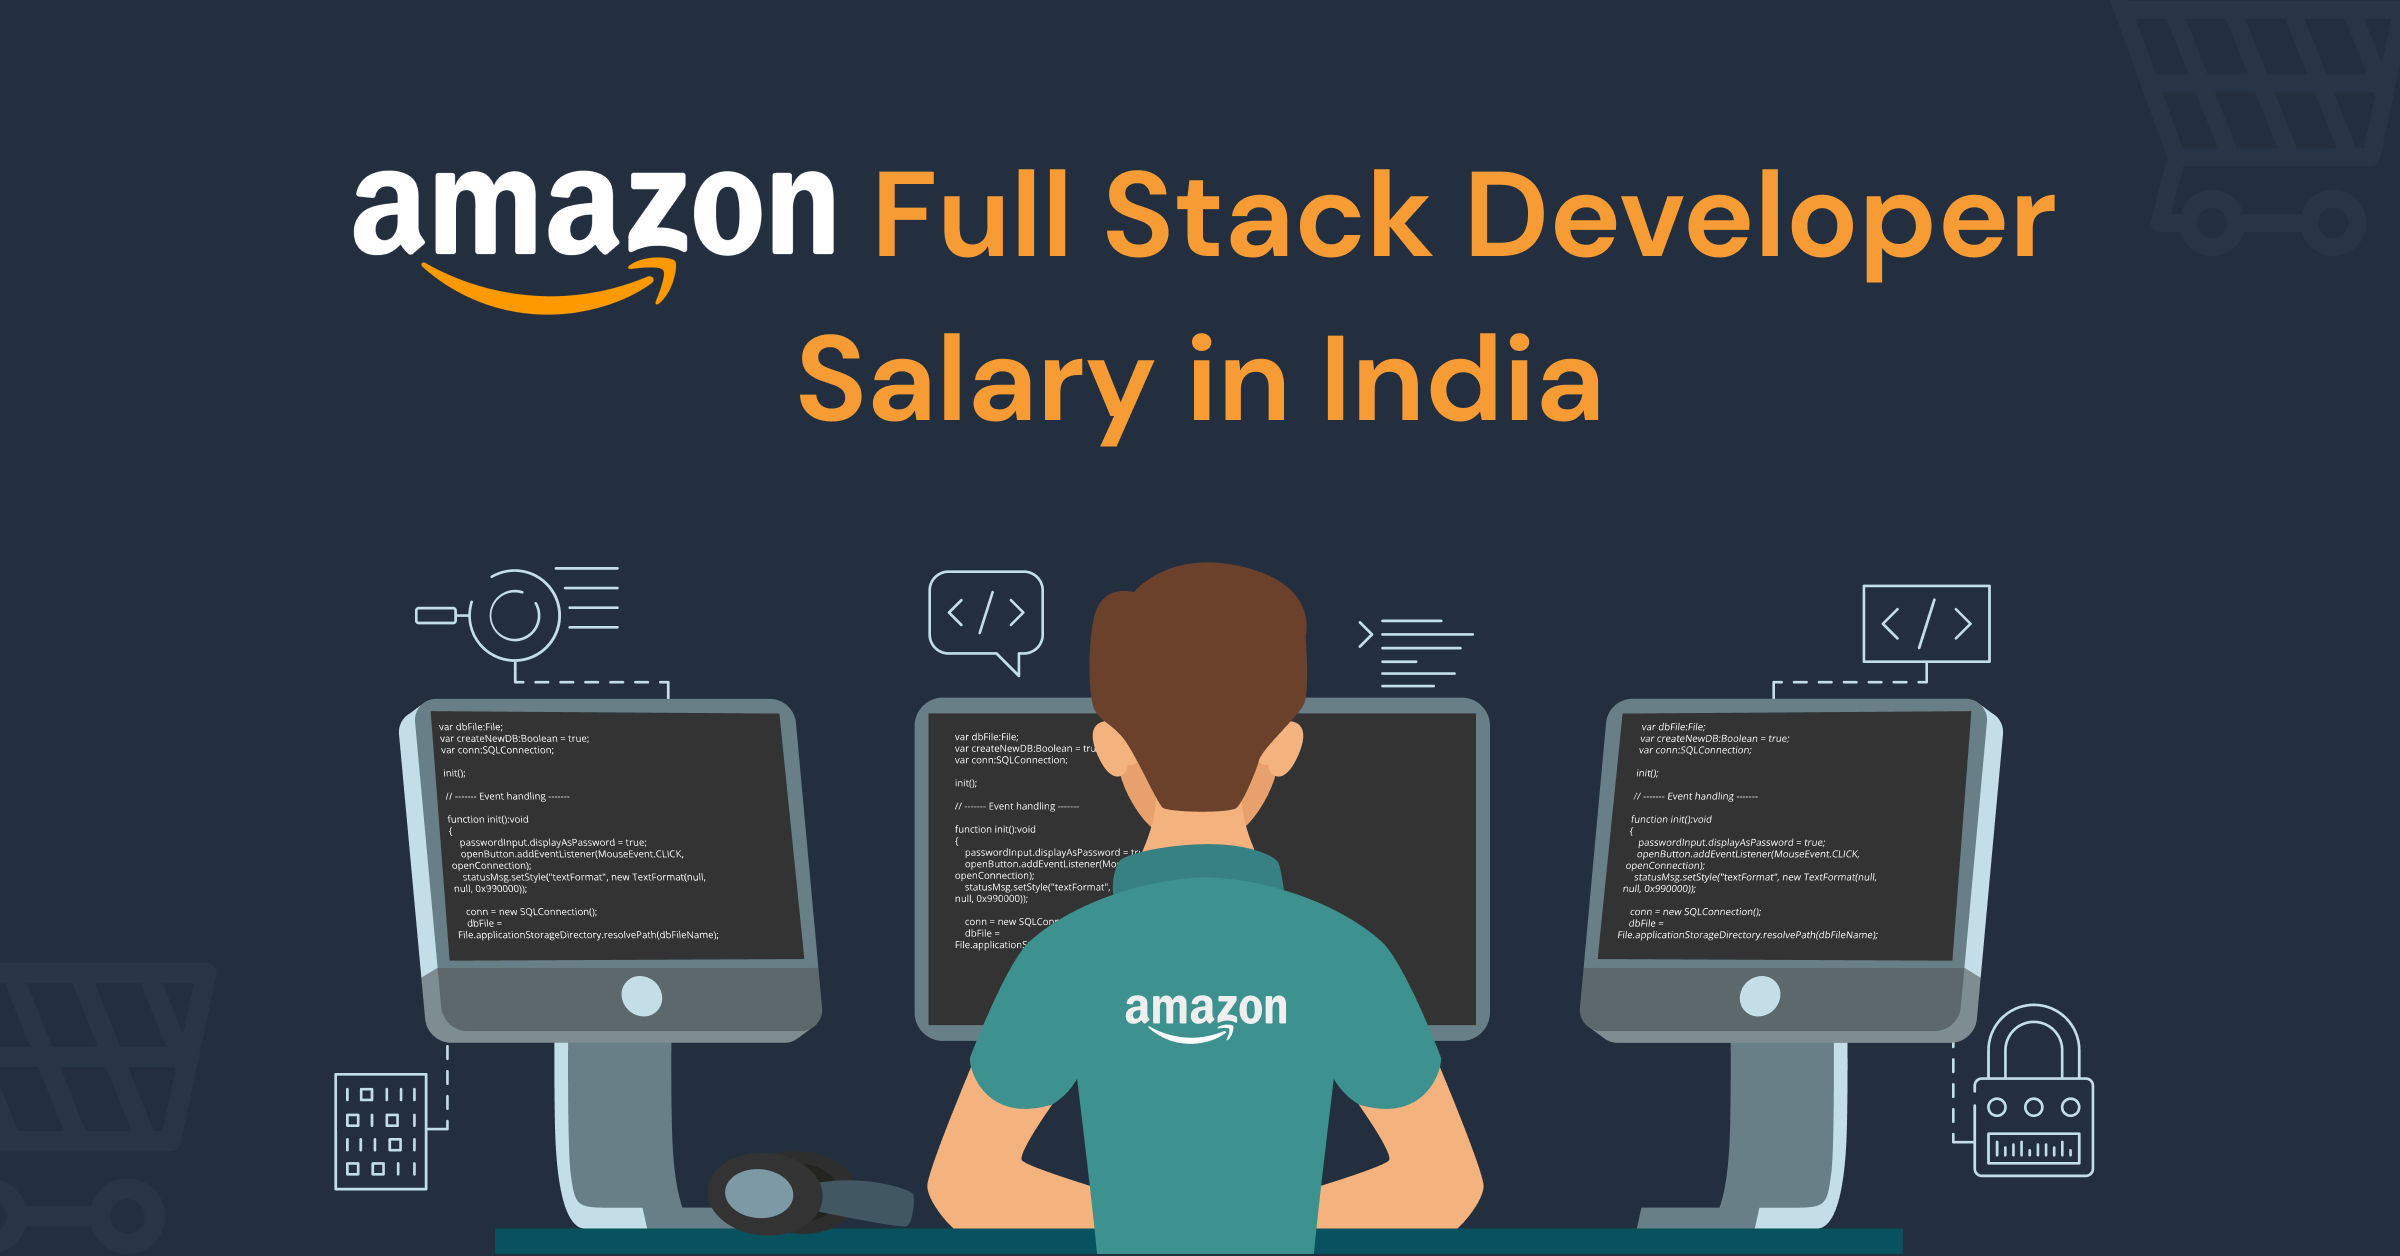 Amazon Full Stack Developer salary in India